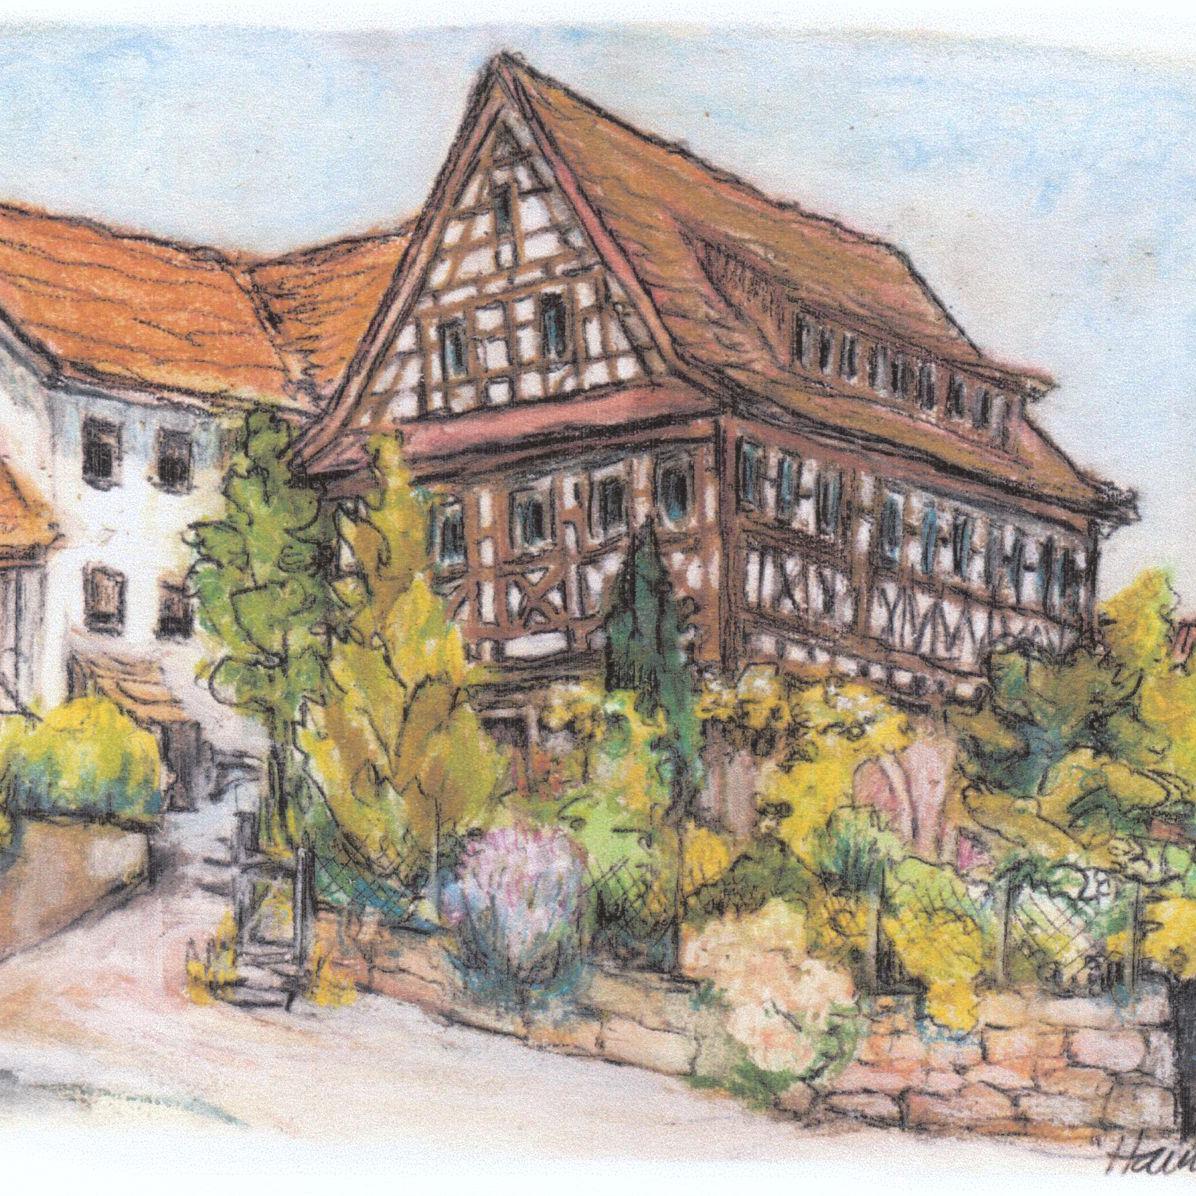 2009: Postkarte mit der ehemalige Gaststätte Krone in der Badbrunnenstraße 10 als Motiv (Quelle: Jorunn Hames)